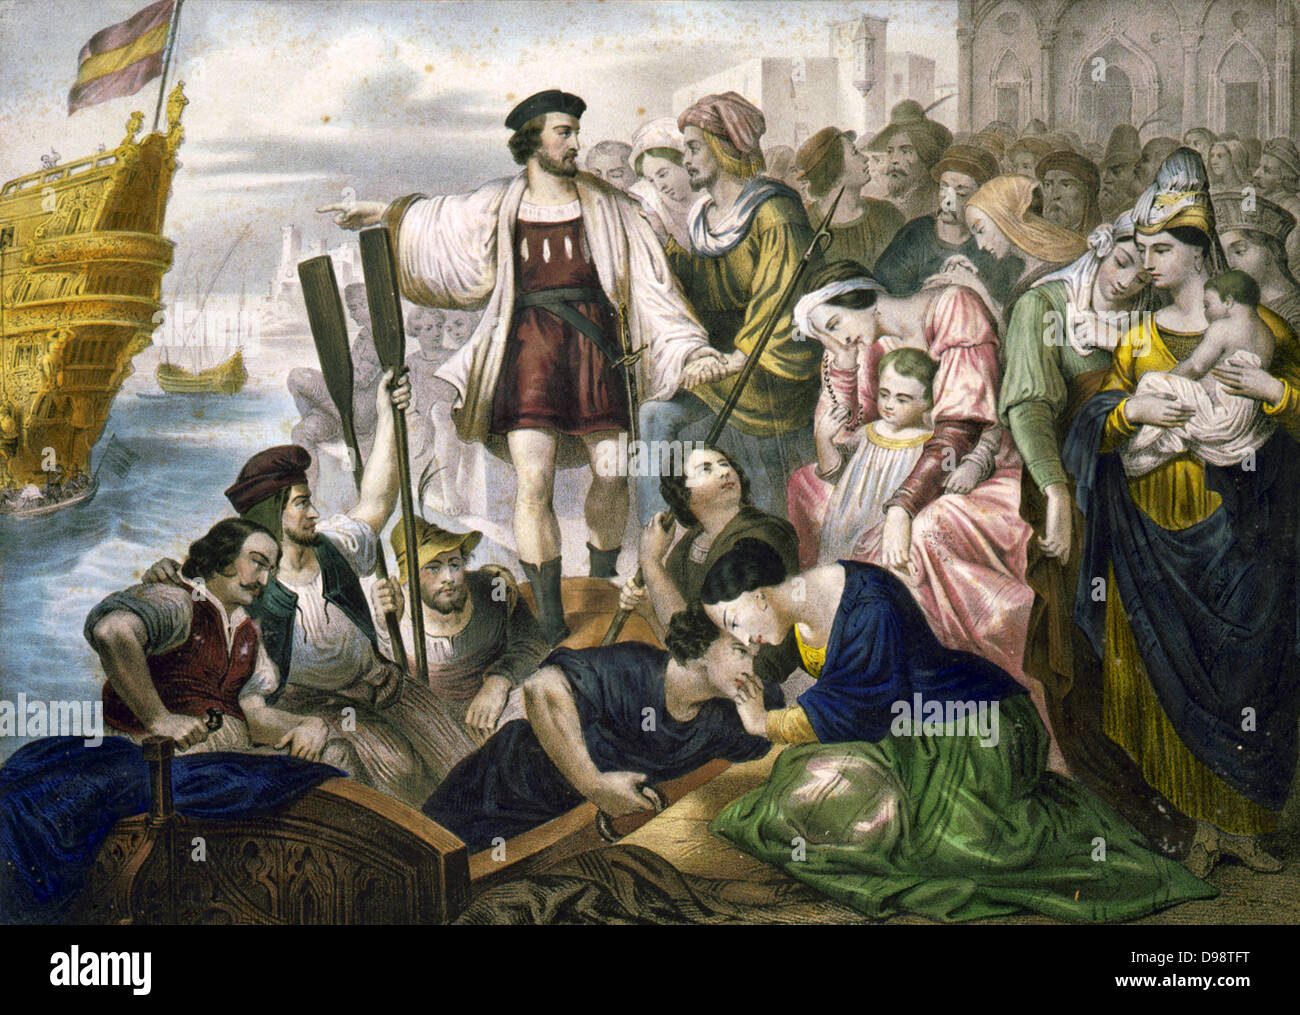 Christophe Colomb sur le point d'embarquer pour le nouveau monde de Palos, Espagne, le 8 août 1492. Les femmes et les enfants triste au départ d'êtres chers. Print c1860. L'Amérique Découverte Exploration Banque D'Images